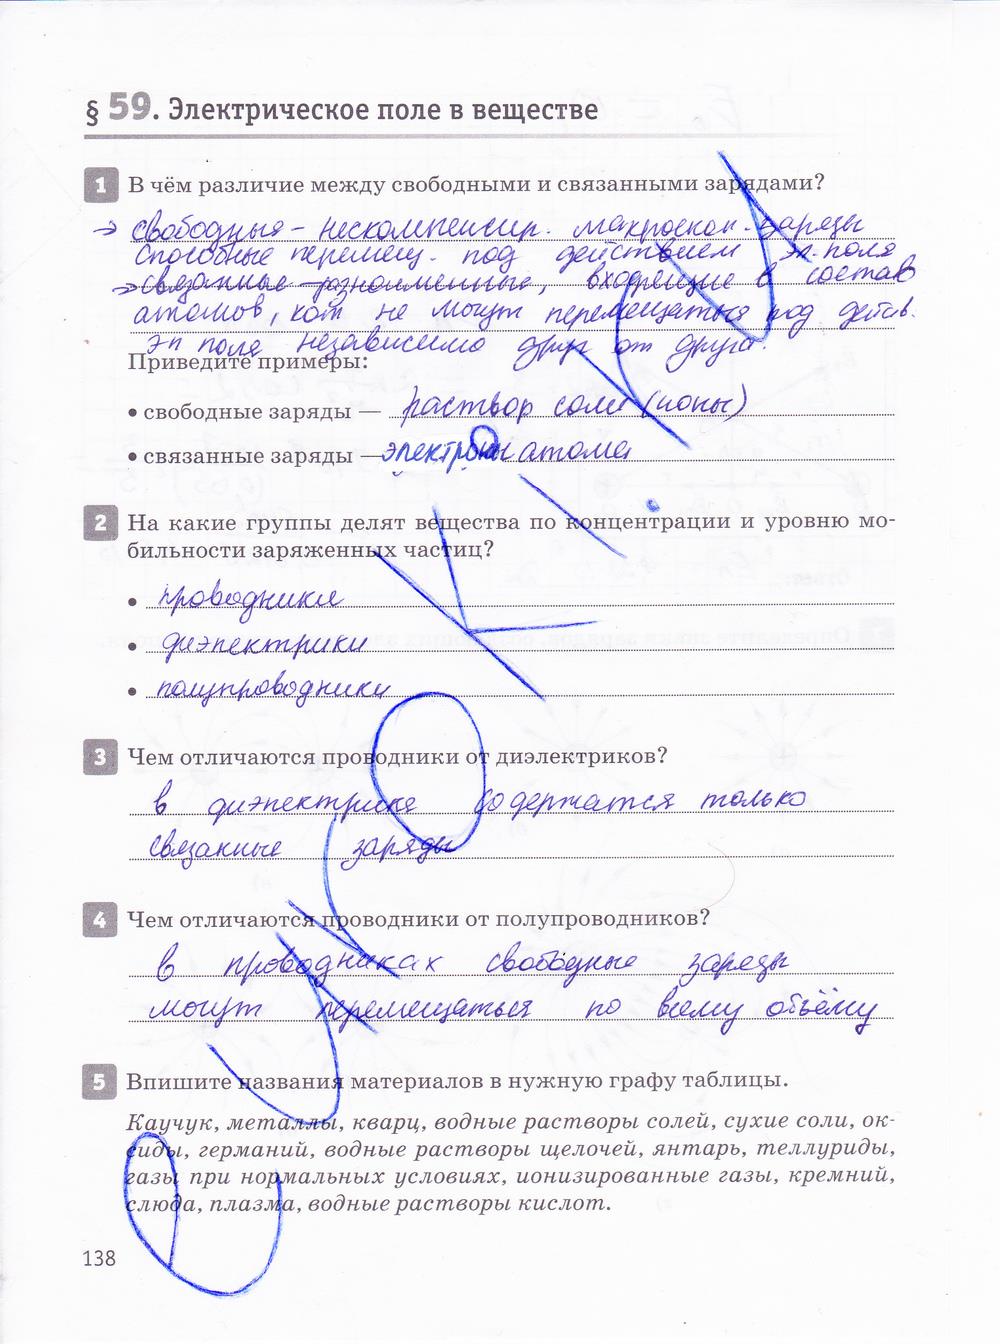 гдз 10 класс рабочая тетрадь страница 138 физика Касьянов, Дмитриева